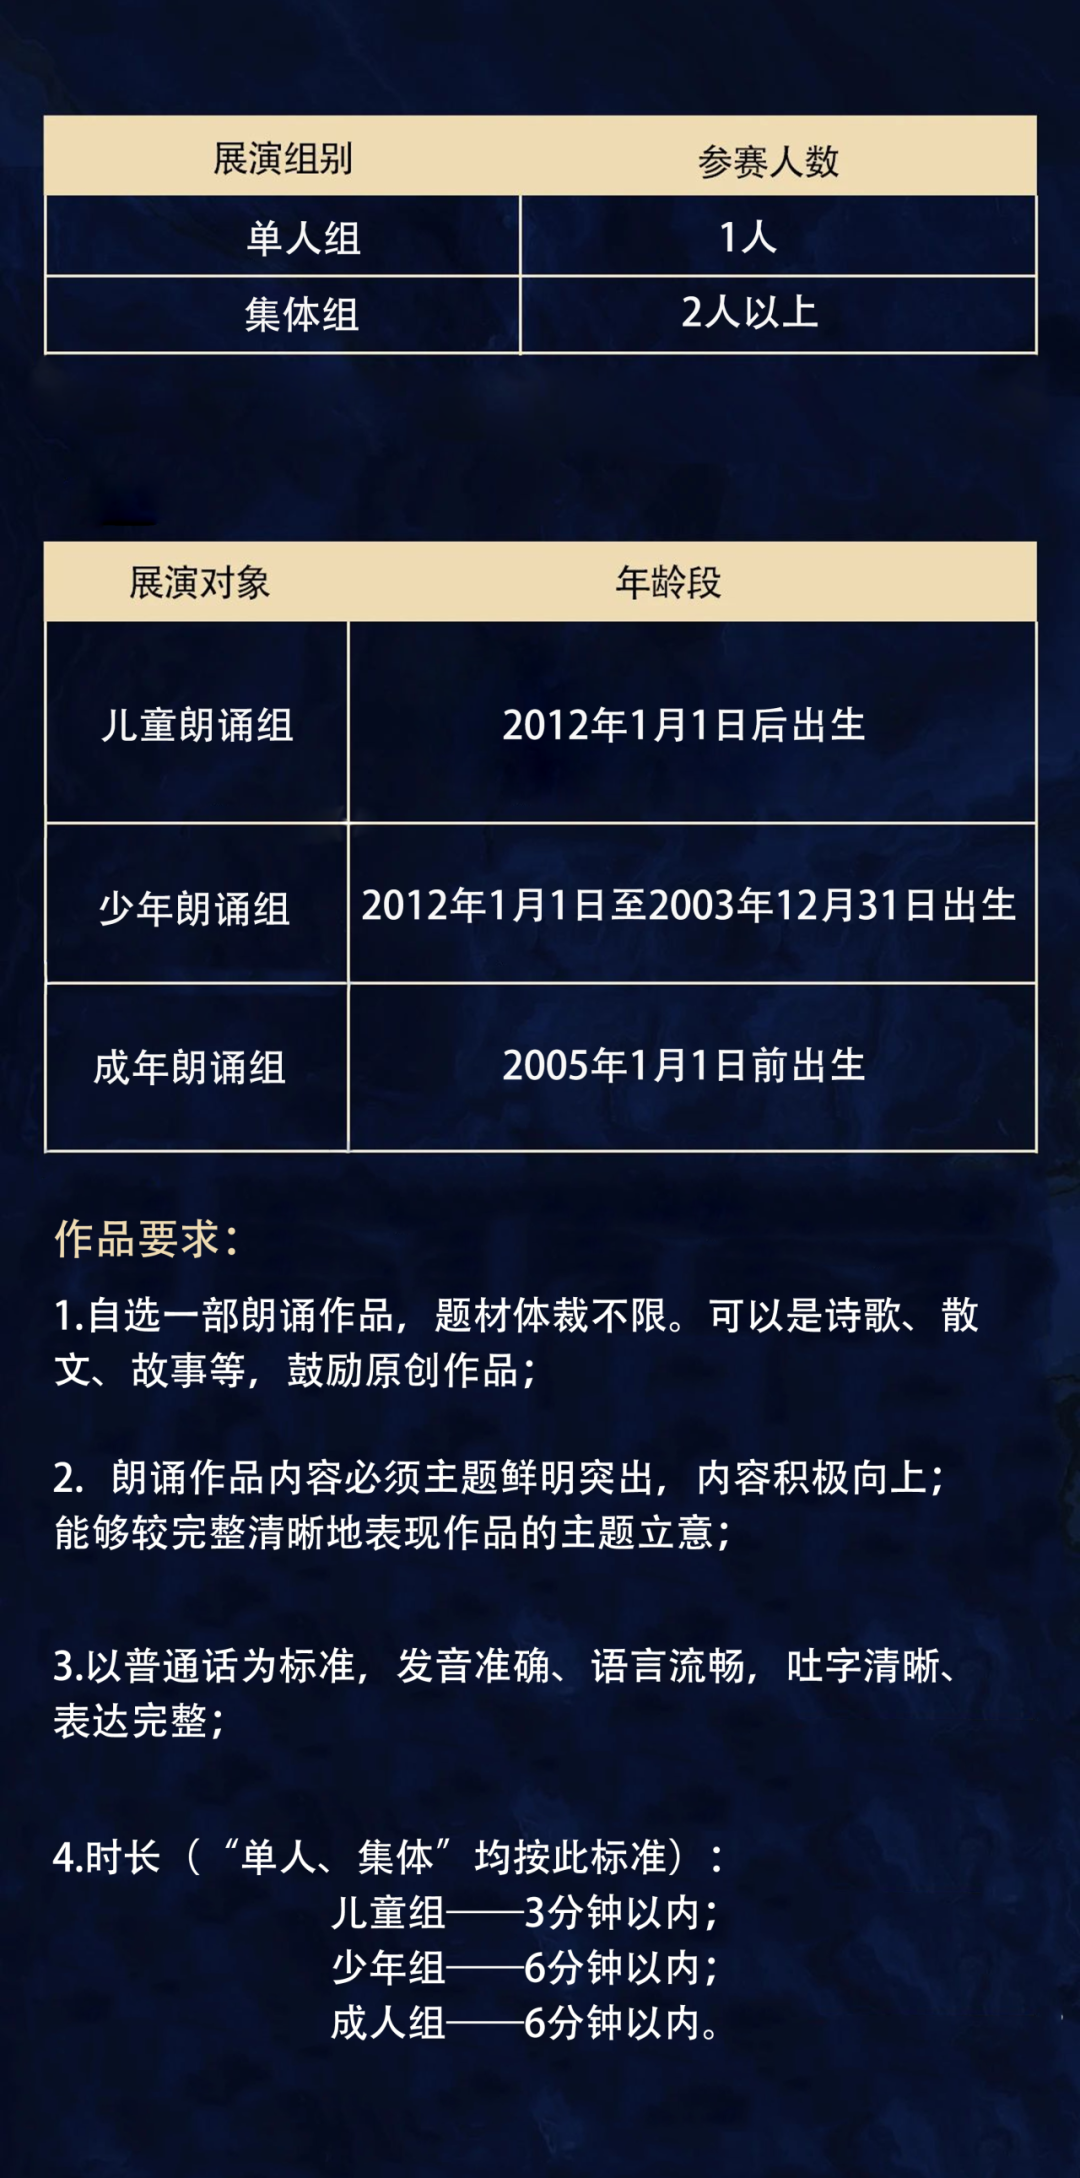 官宣 | 中国爱乐乐团朗诵全国展演贵州赛区开始报名！